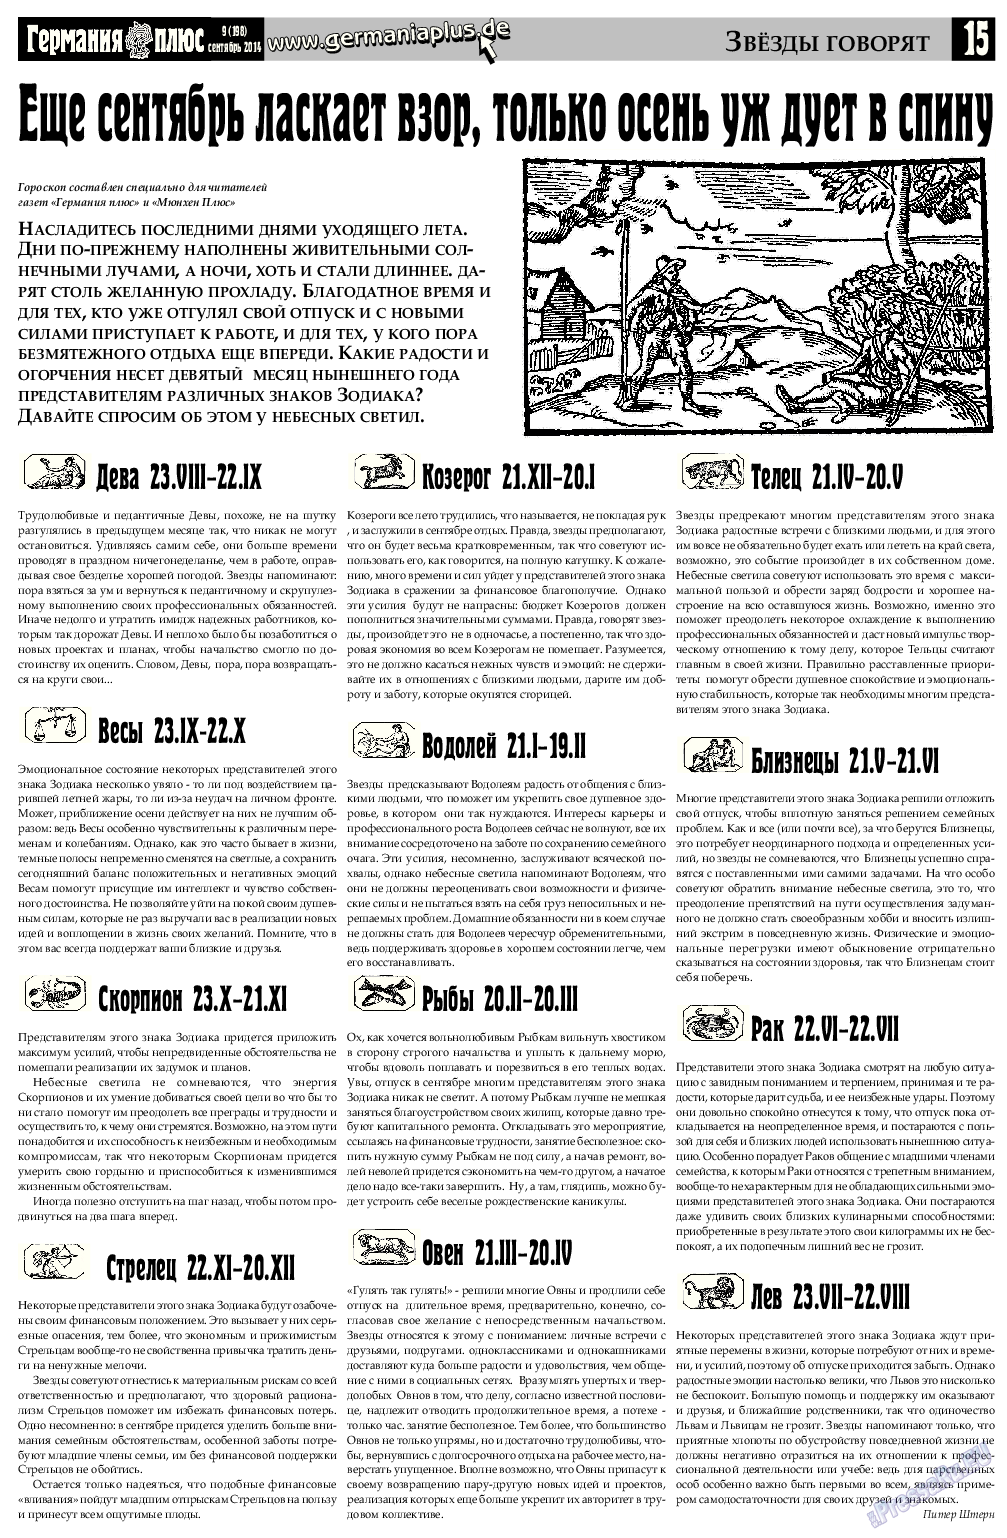 Германия плюс, газета. 2014 №8 стр.15